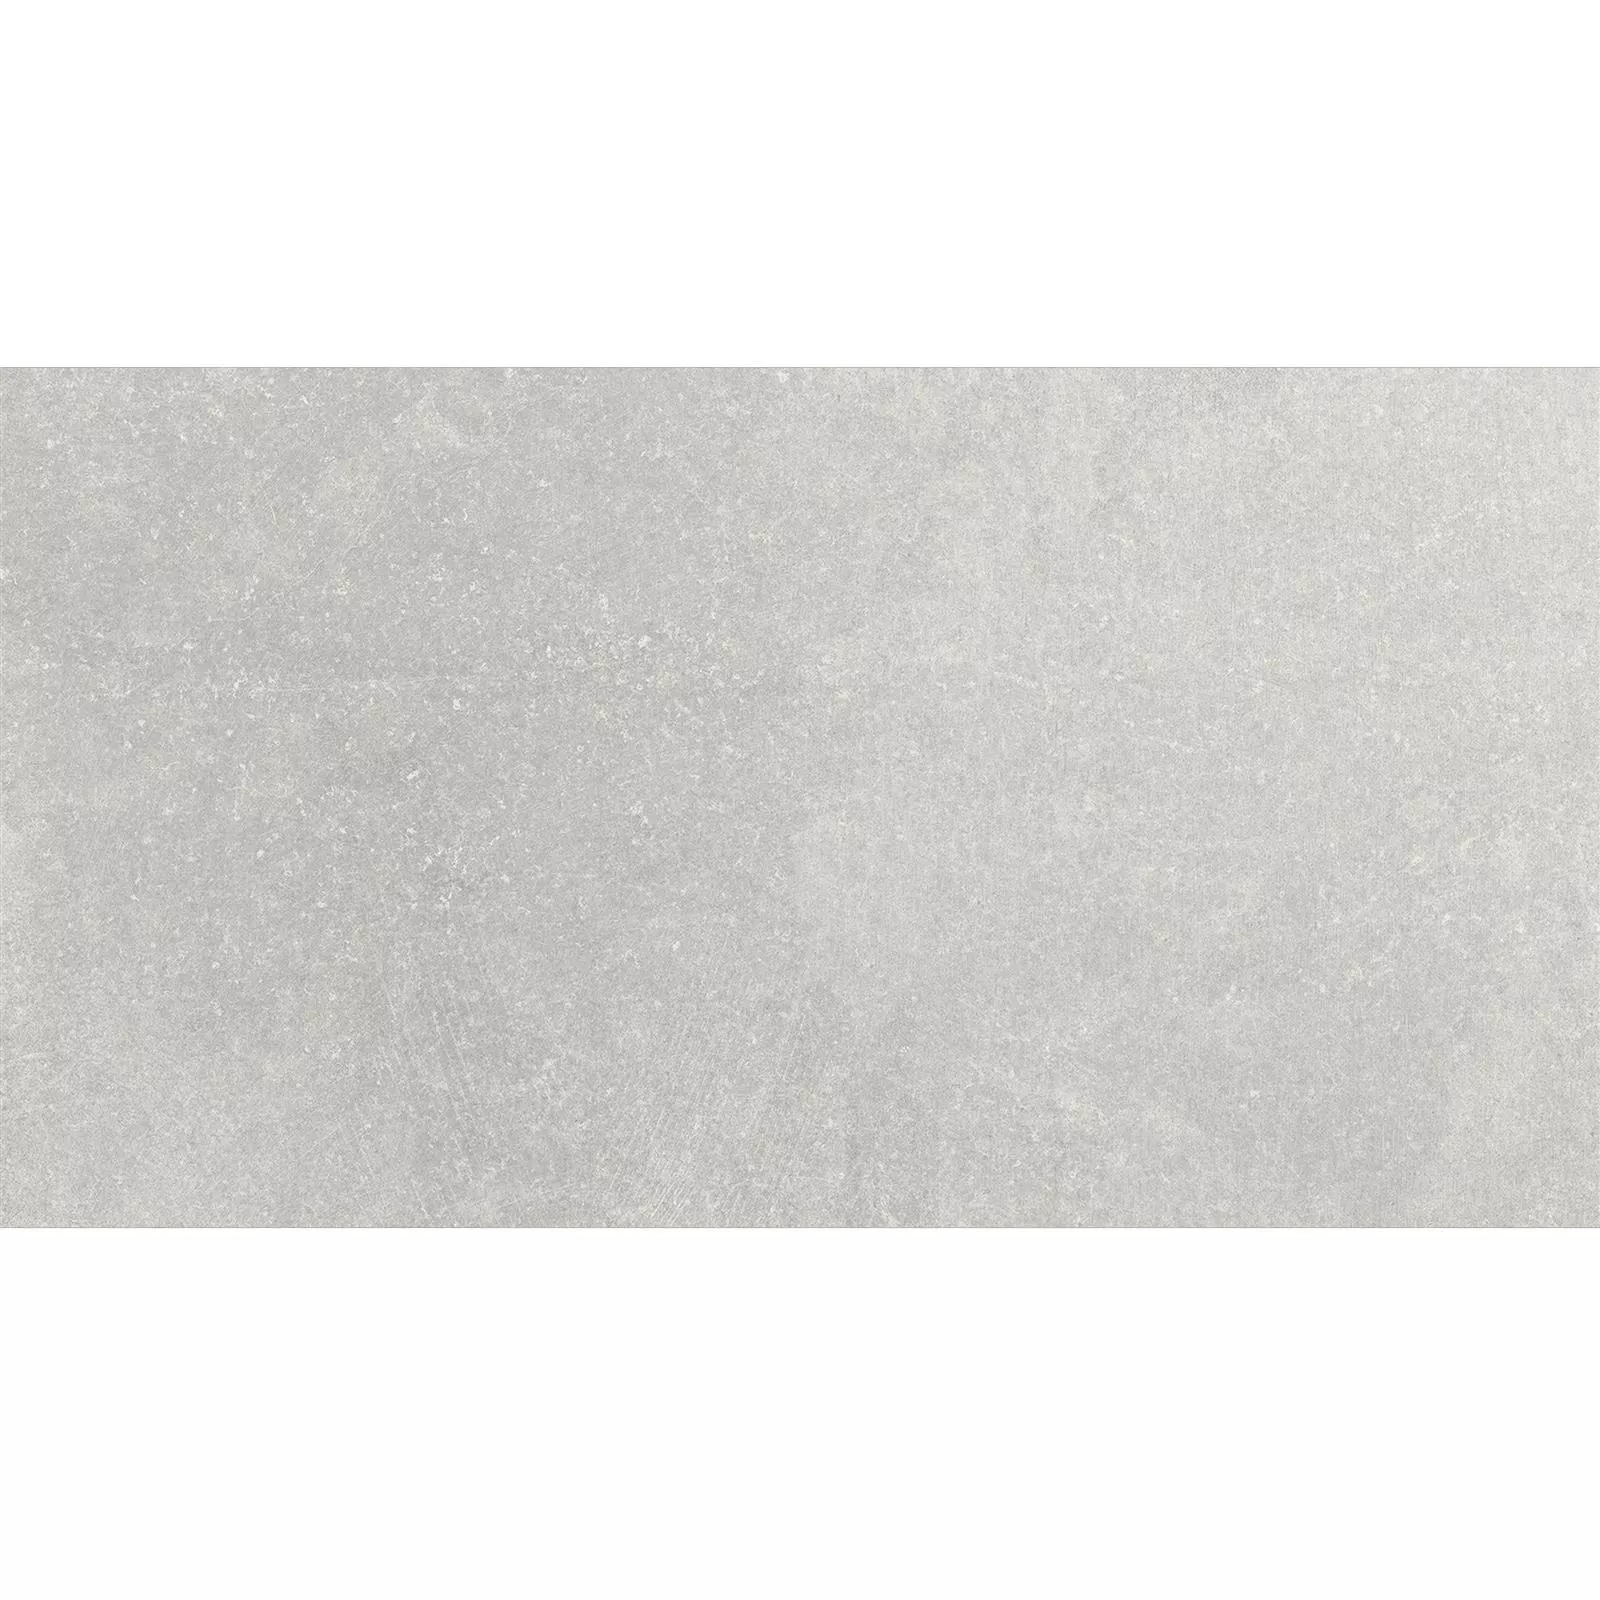 Πρότυπο Πλακάκια Δαπέδου Πέτρινη Όψη Horizon Γκρί 30x60cm